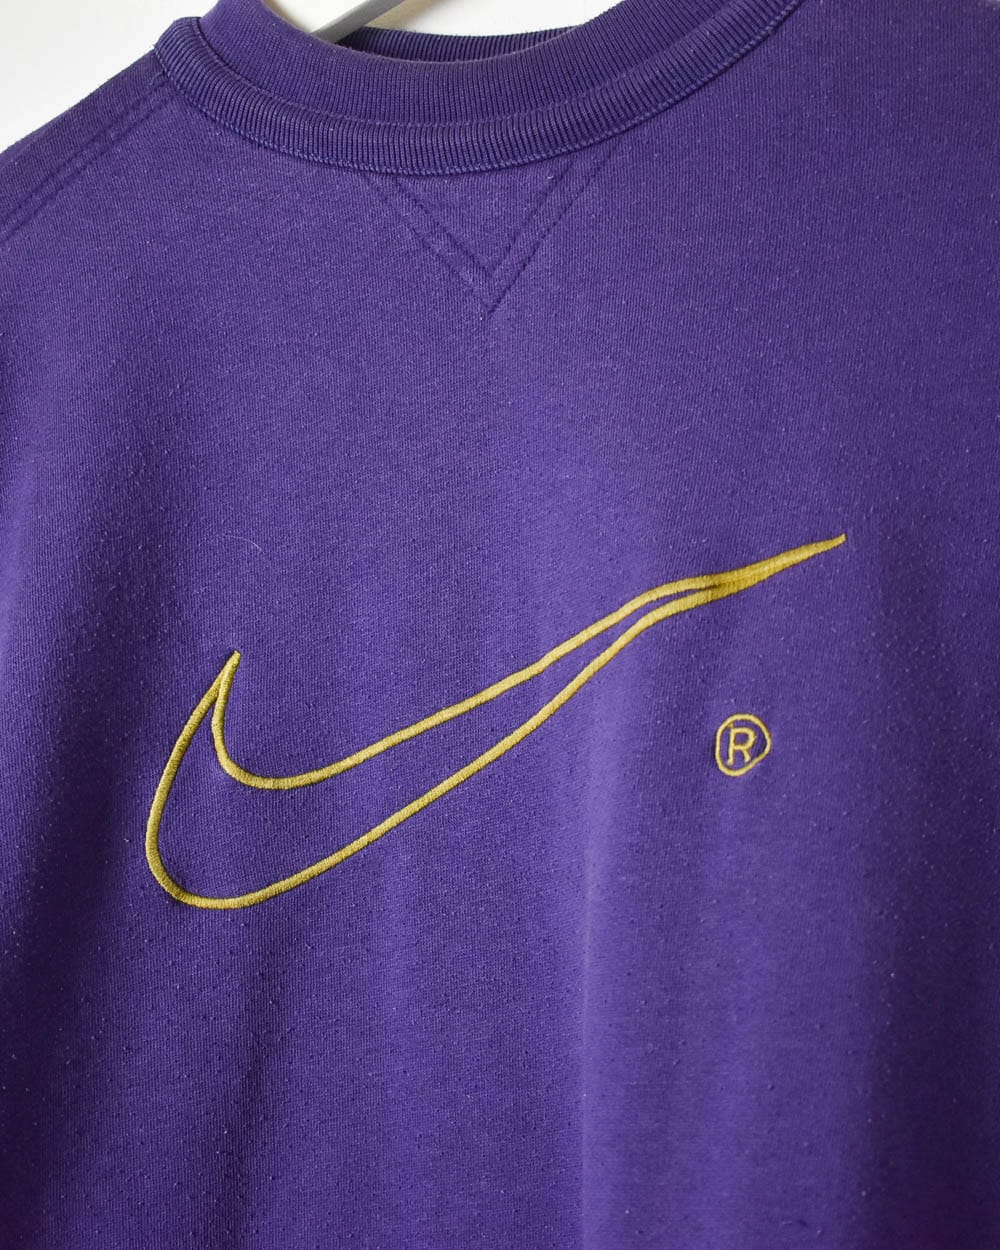 Purple Nike Mock Neck Sweatshirt - Small